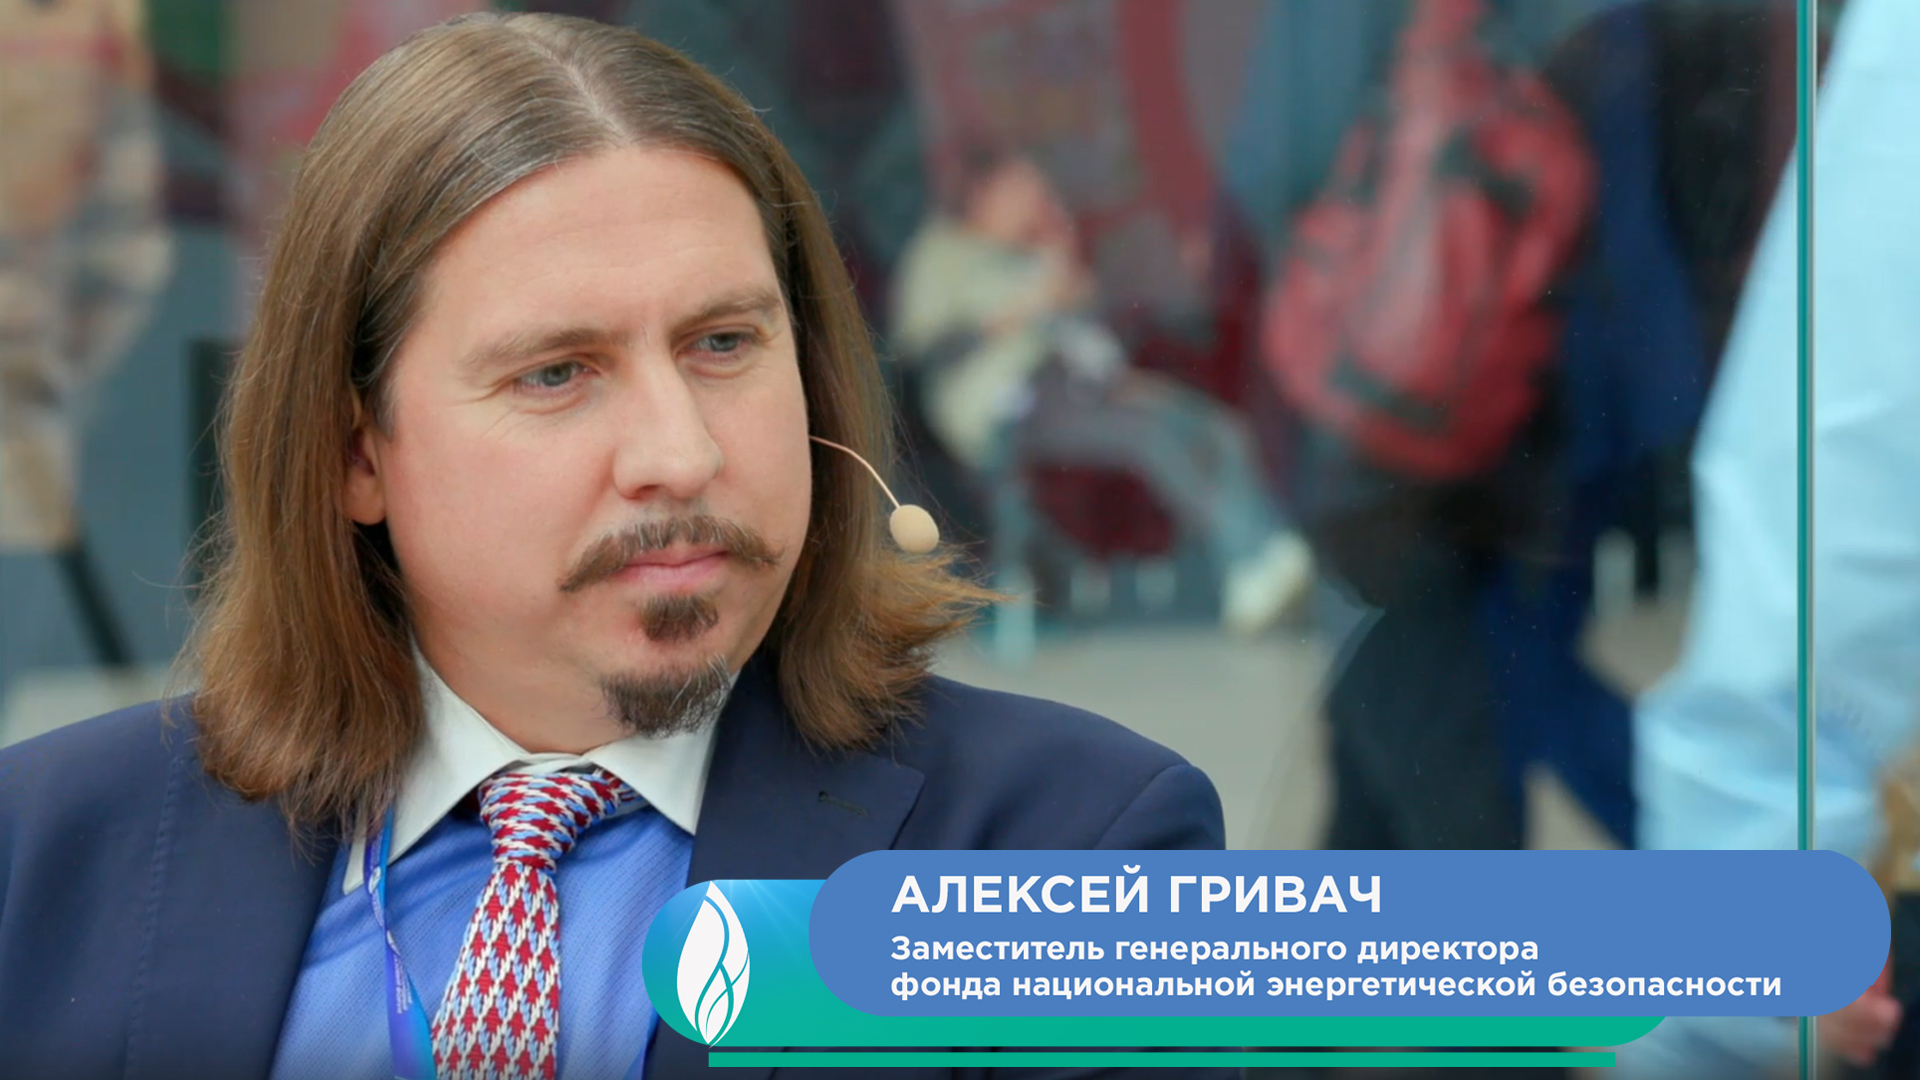 Алексей Гривач, заместитель генерального директора фонда национальной энергетической безопасности